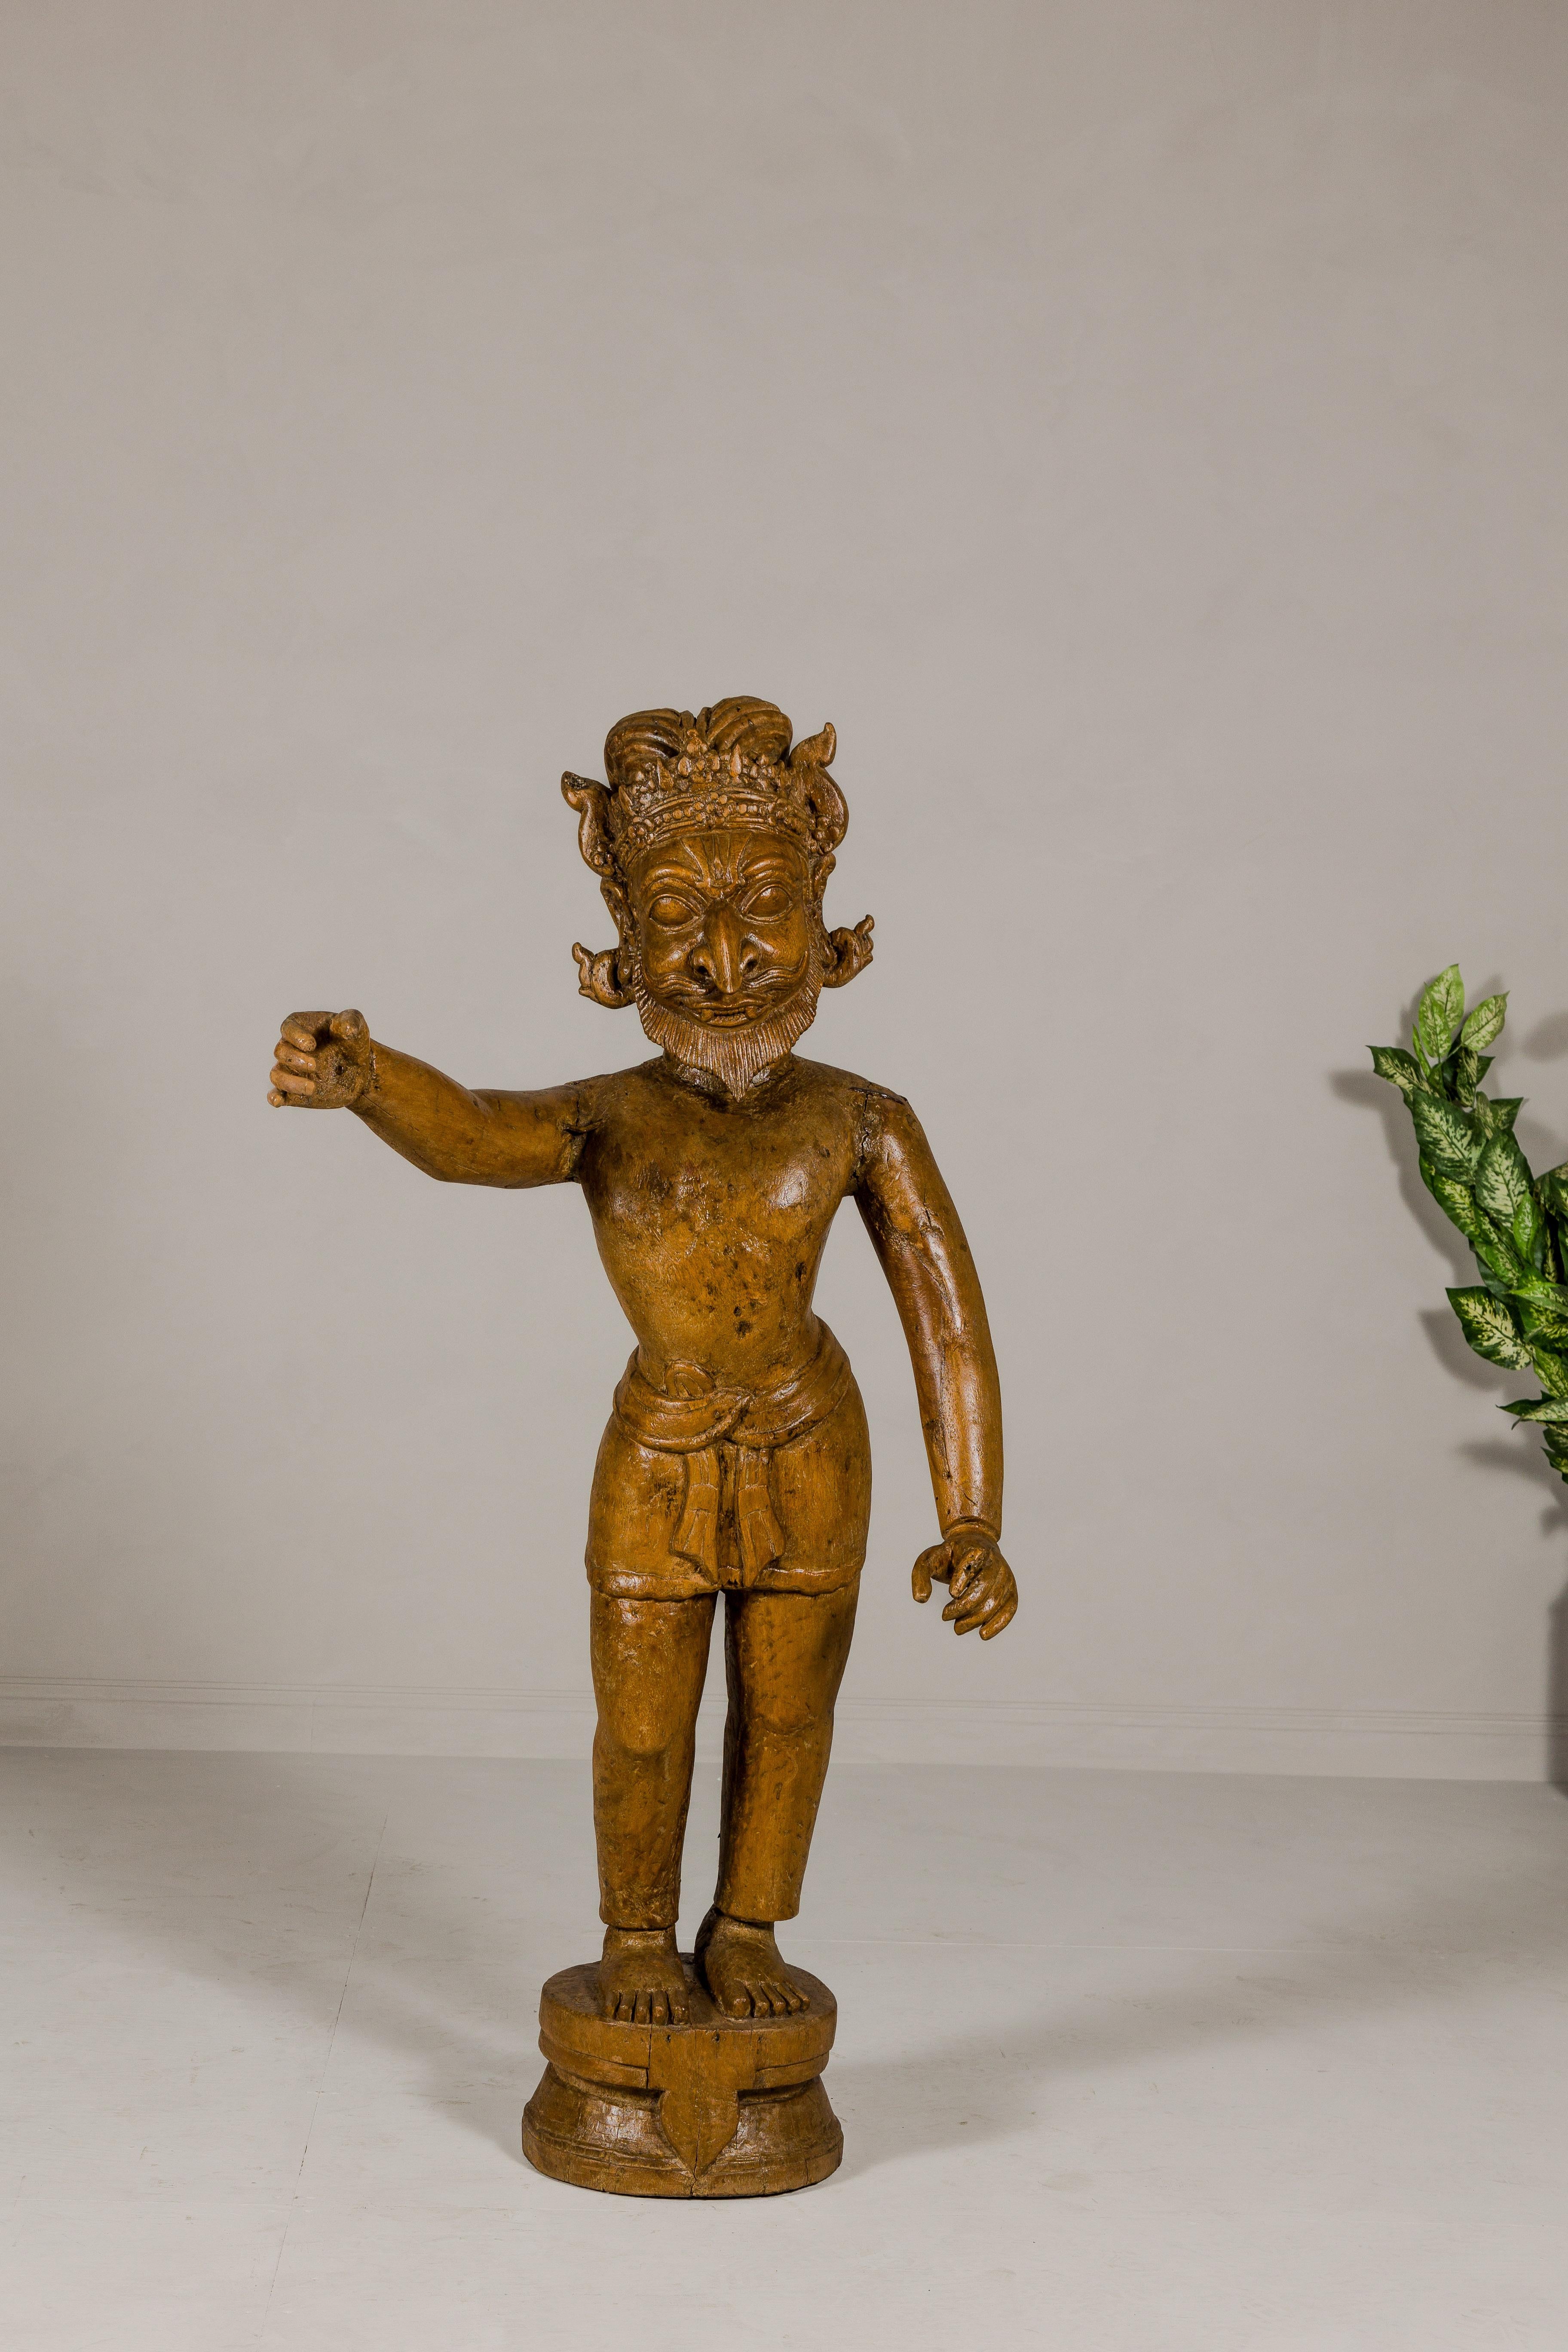 Grande figurine Mogul en bois du début des années 1900, avec bras tendu, provenant de l'Inde. Cette figure moghole en bois, originaire de l'Inde du début du XXe siècle, est une pièce remarquable de l'art et de l'histoire culturelle. Cette statue